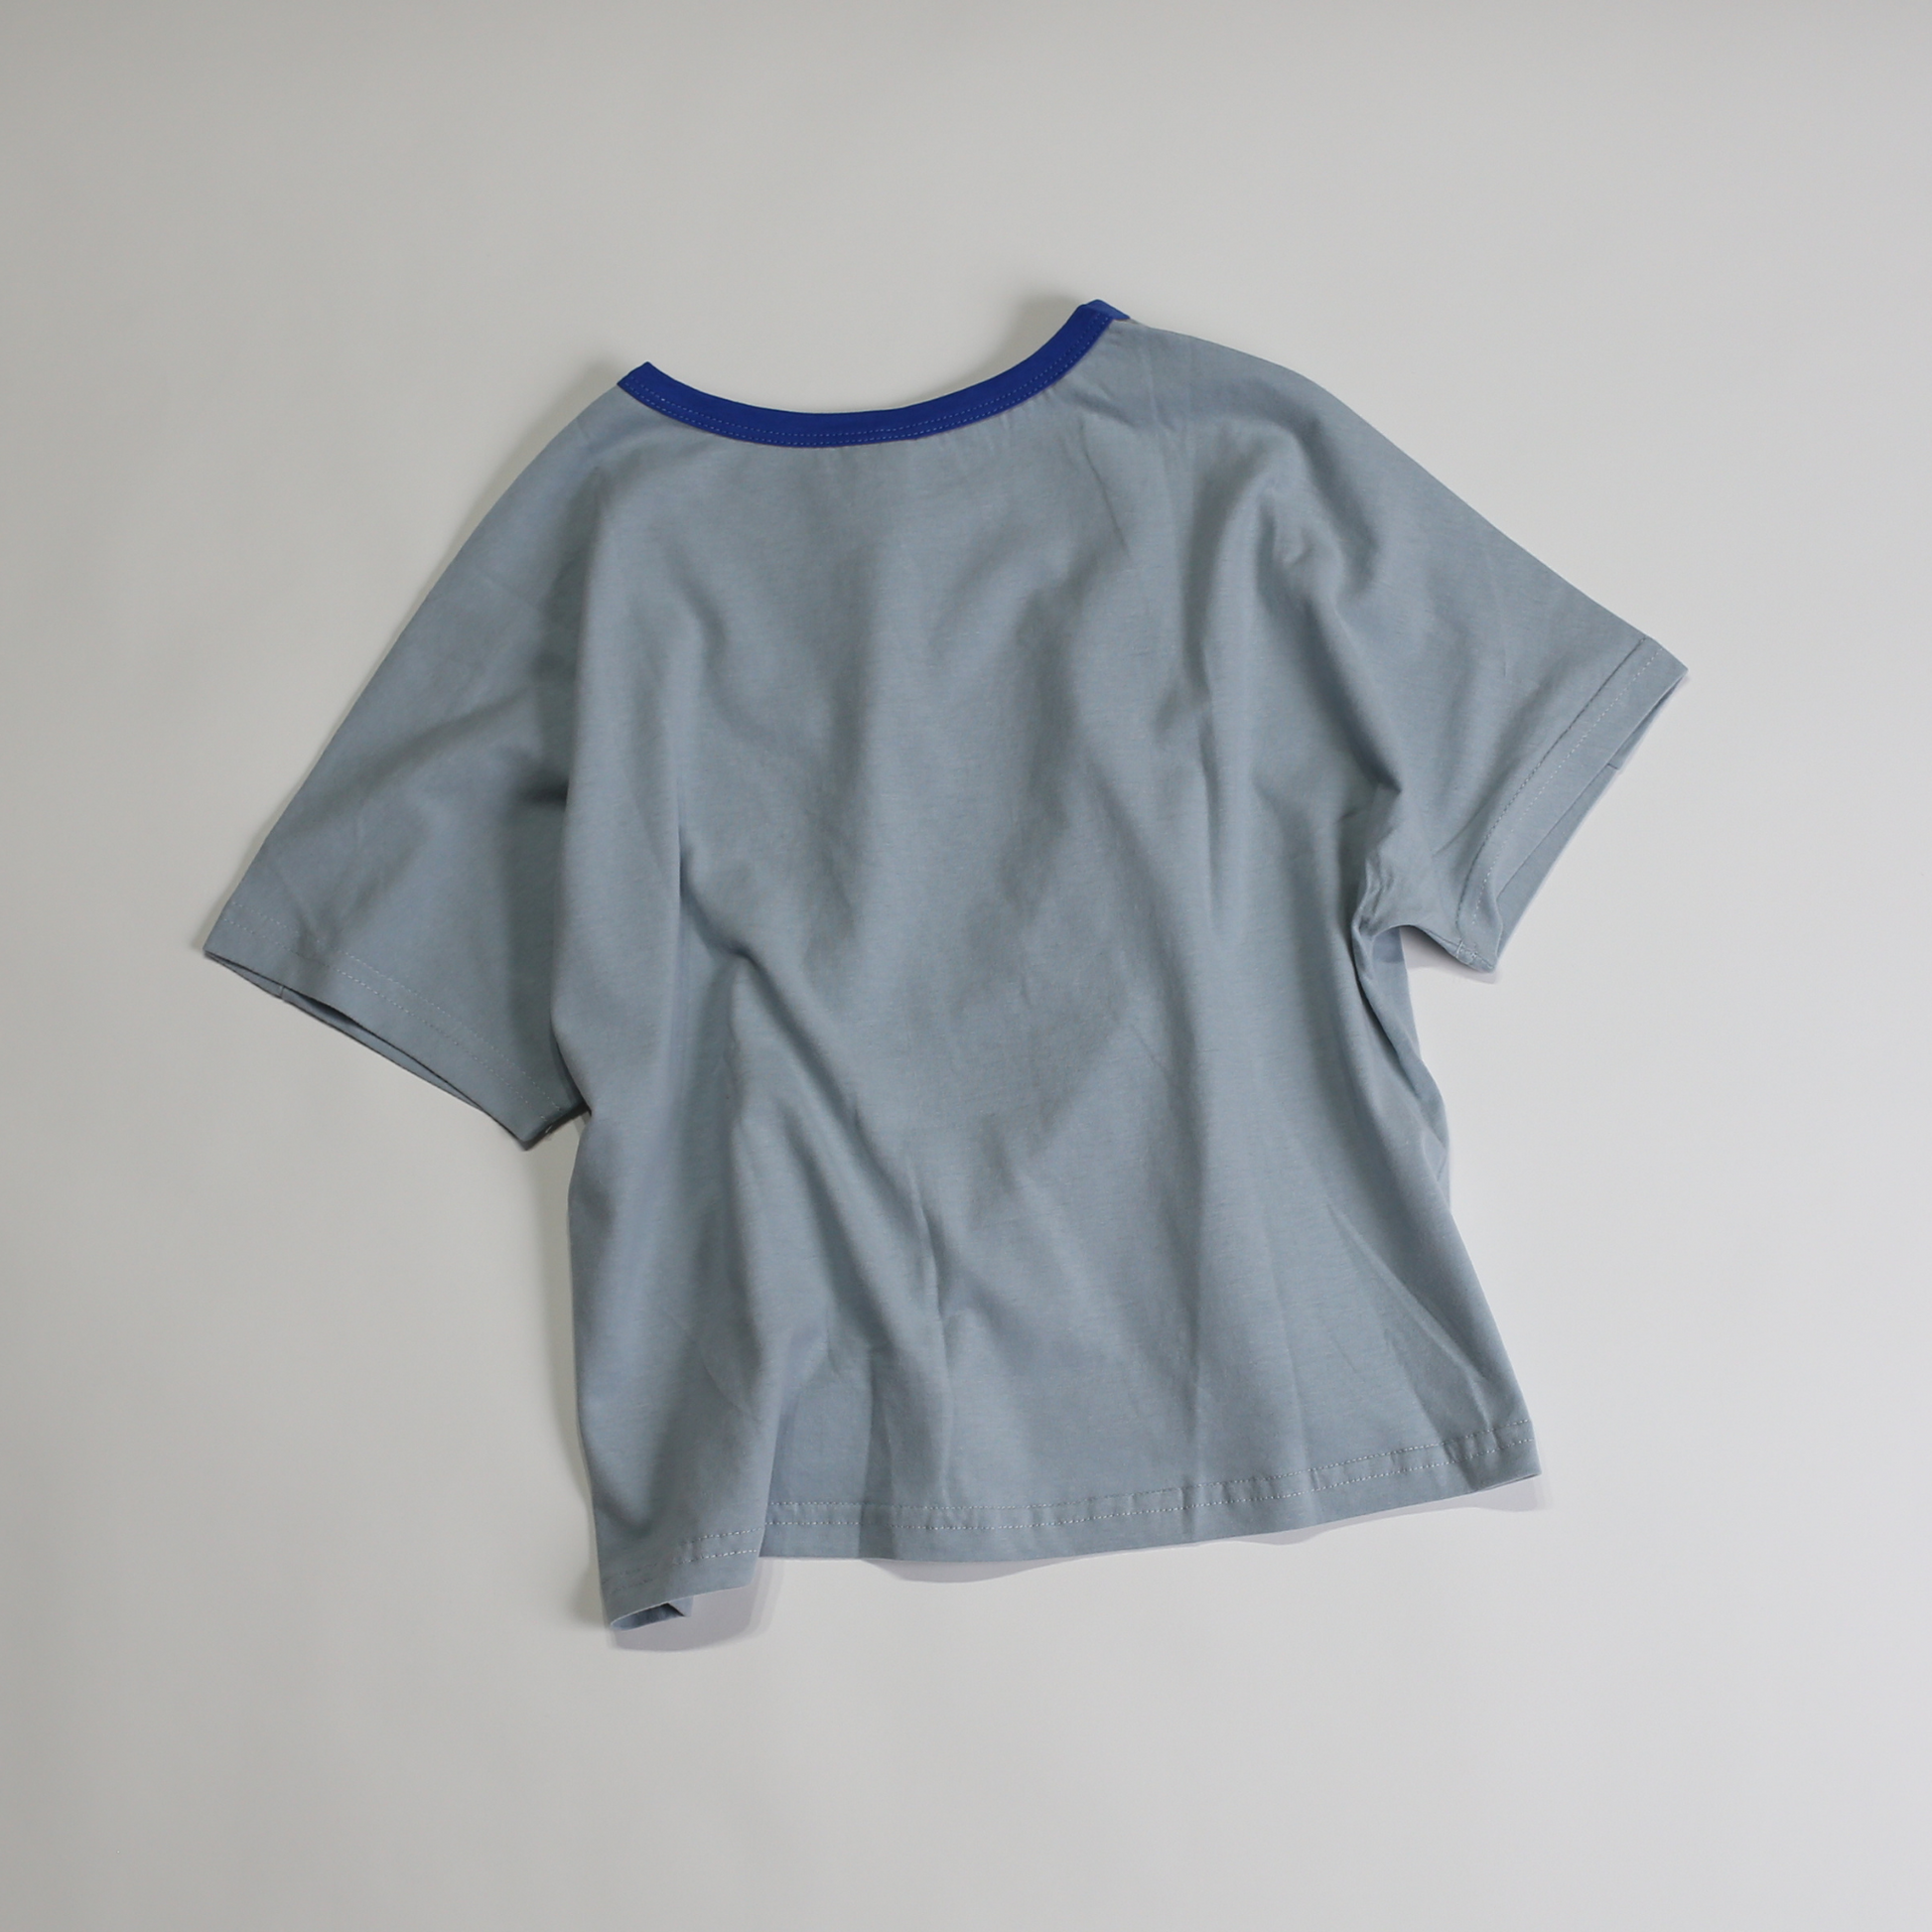 コアラ プリントTシャツ / koala tee (こども服) - kids clothes shop GUZUGUZU